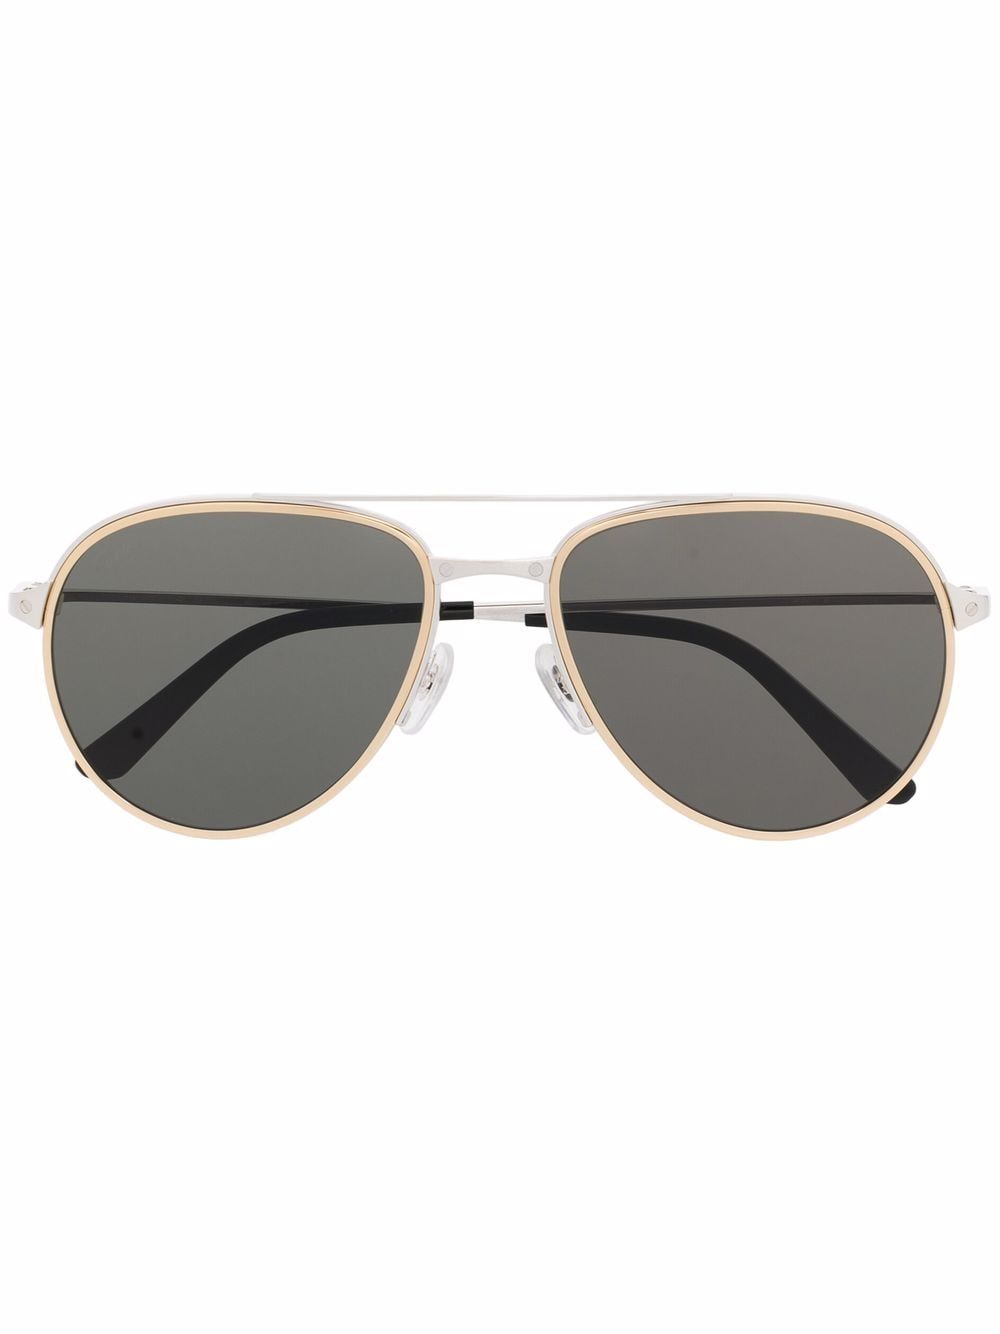 фото Cartier eyewear солнцезащитные очки-авиаторы santos de cartier